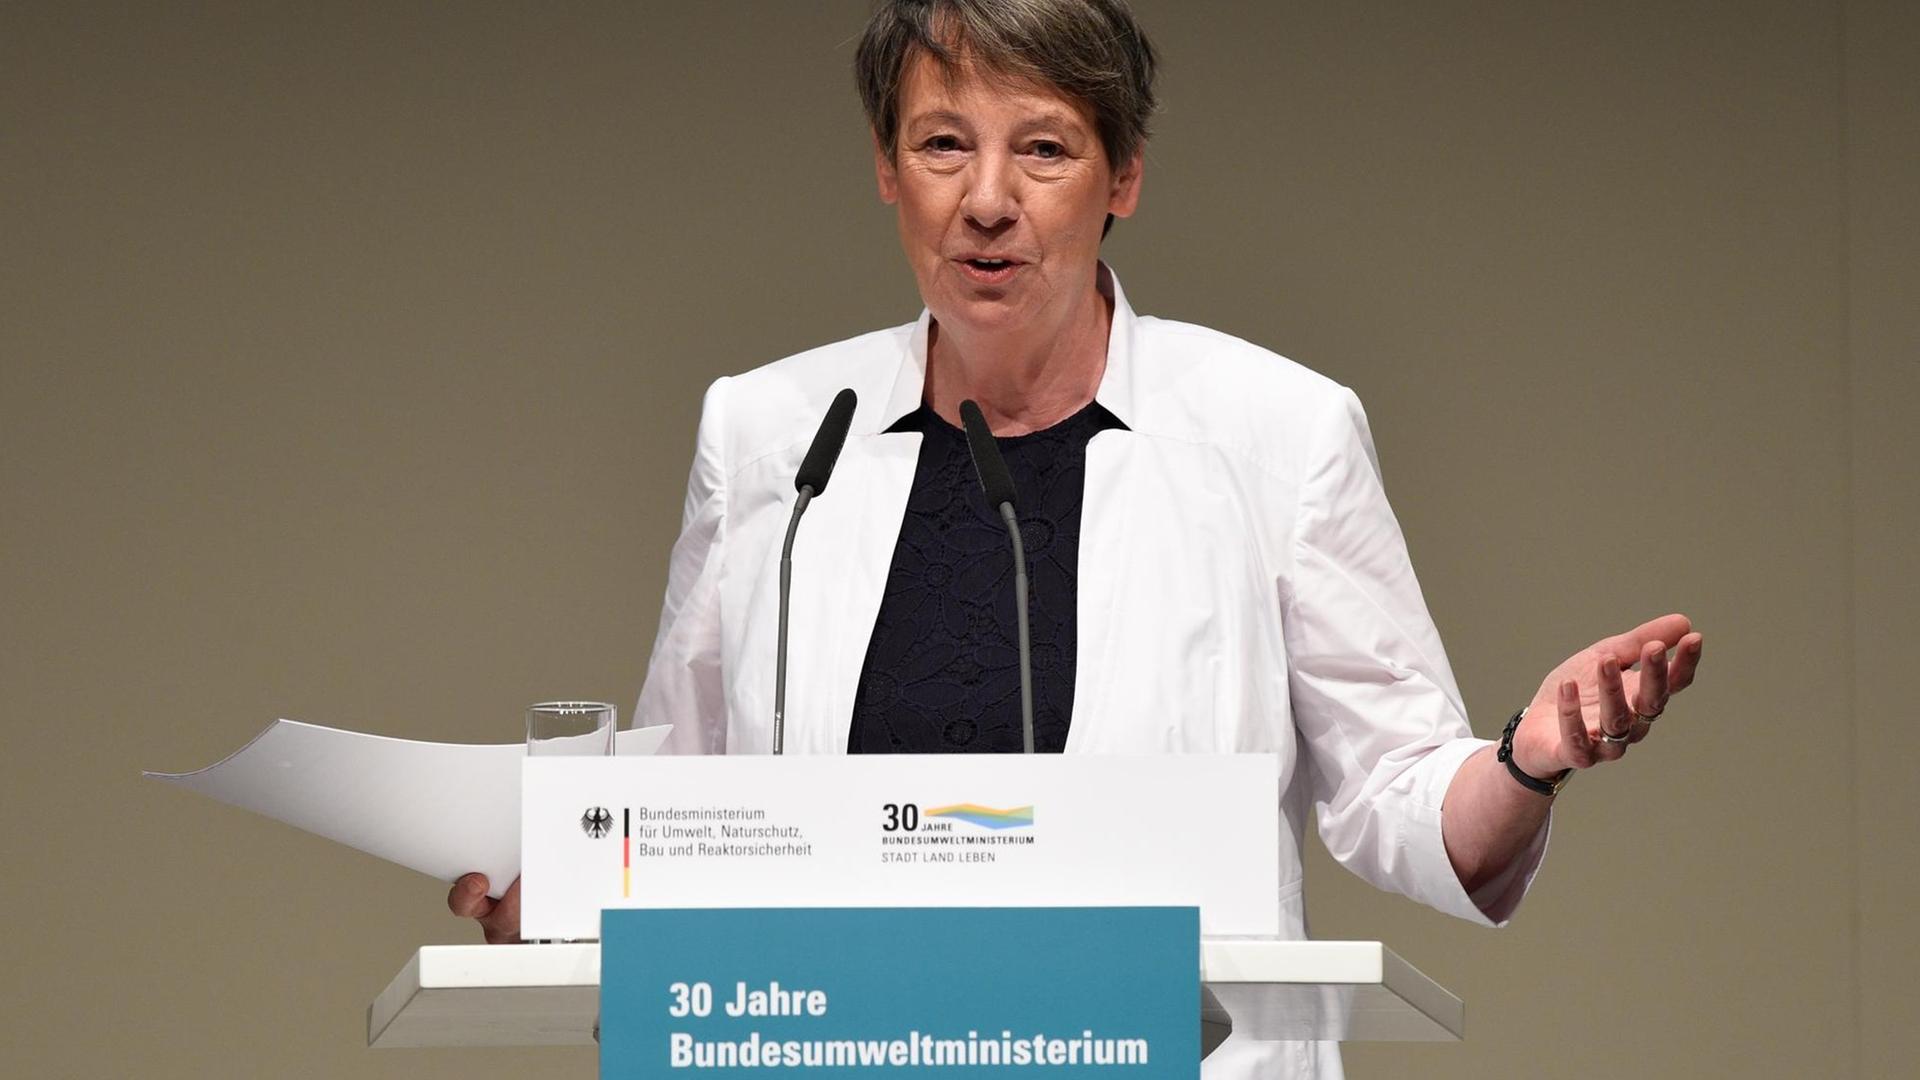 Umweltministerin Barbara Hendricks (SPD) begrüßt in Berlin im Rahmen des Festaktes zum 30-jährigen Bestehen des Bundesumweltministeriums die Gäste.